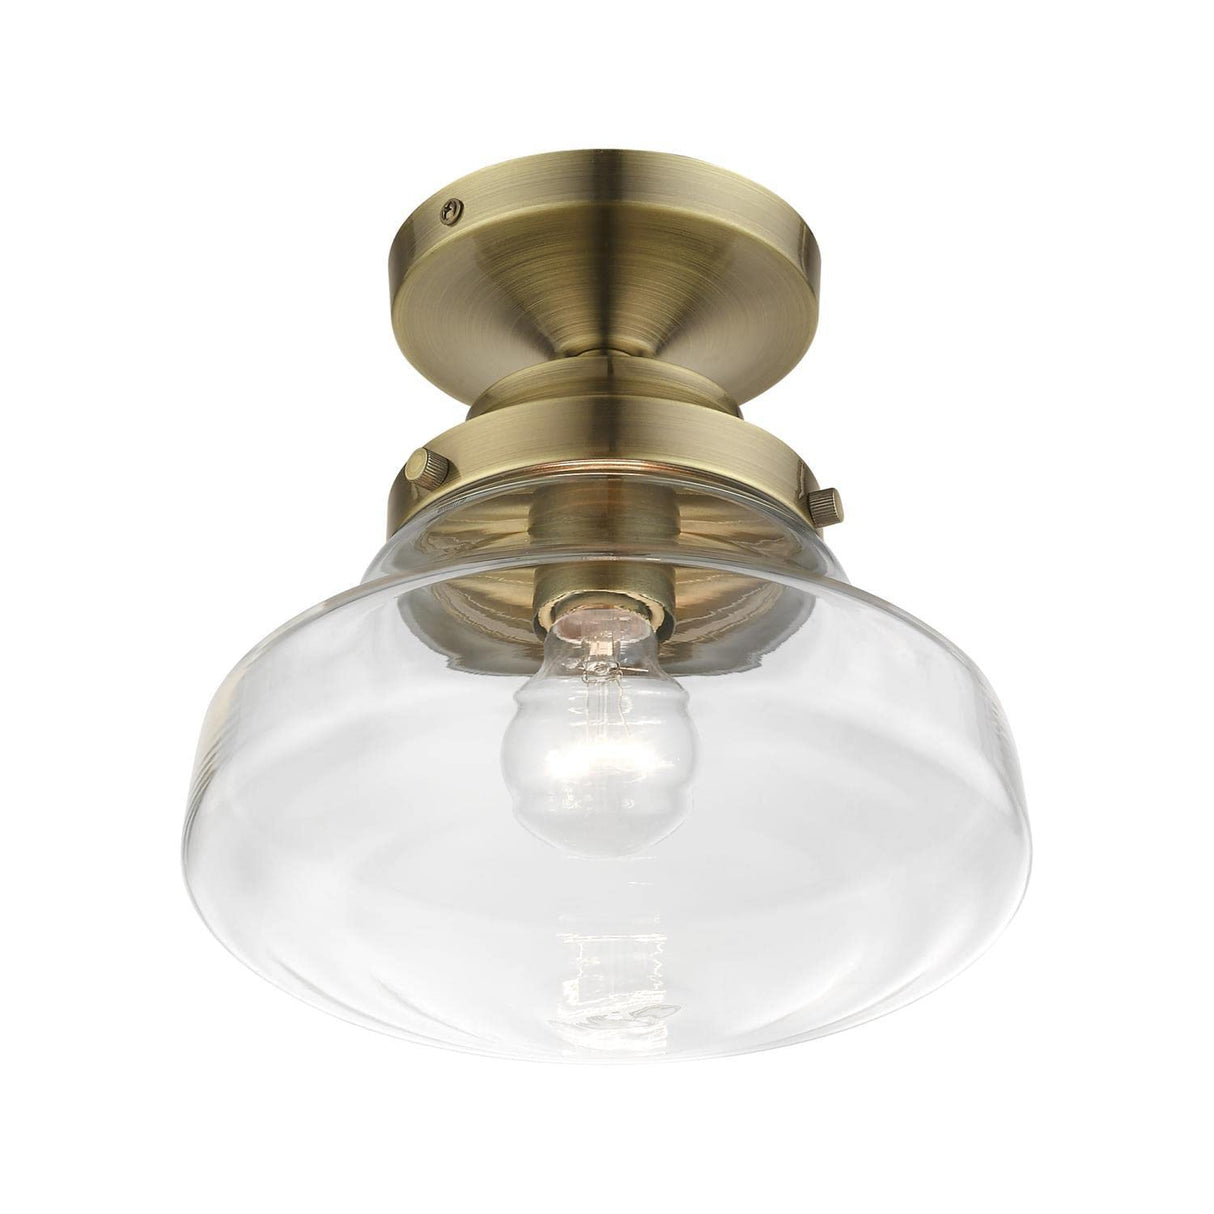 Avondale 1 Light Semi-Flush in Antique Brass (41291-01)